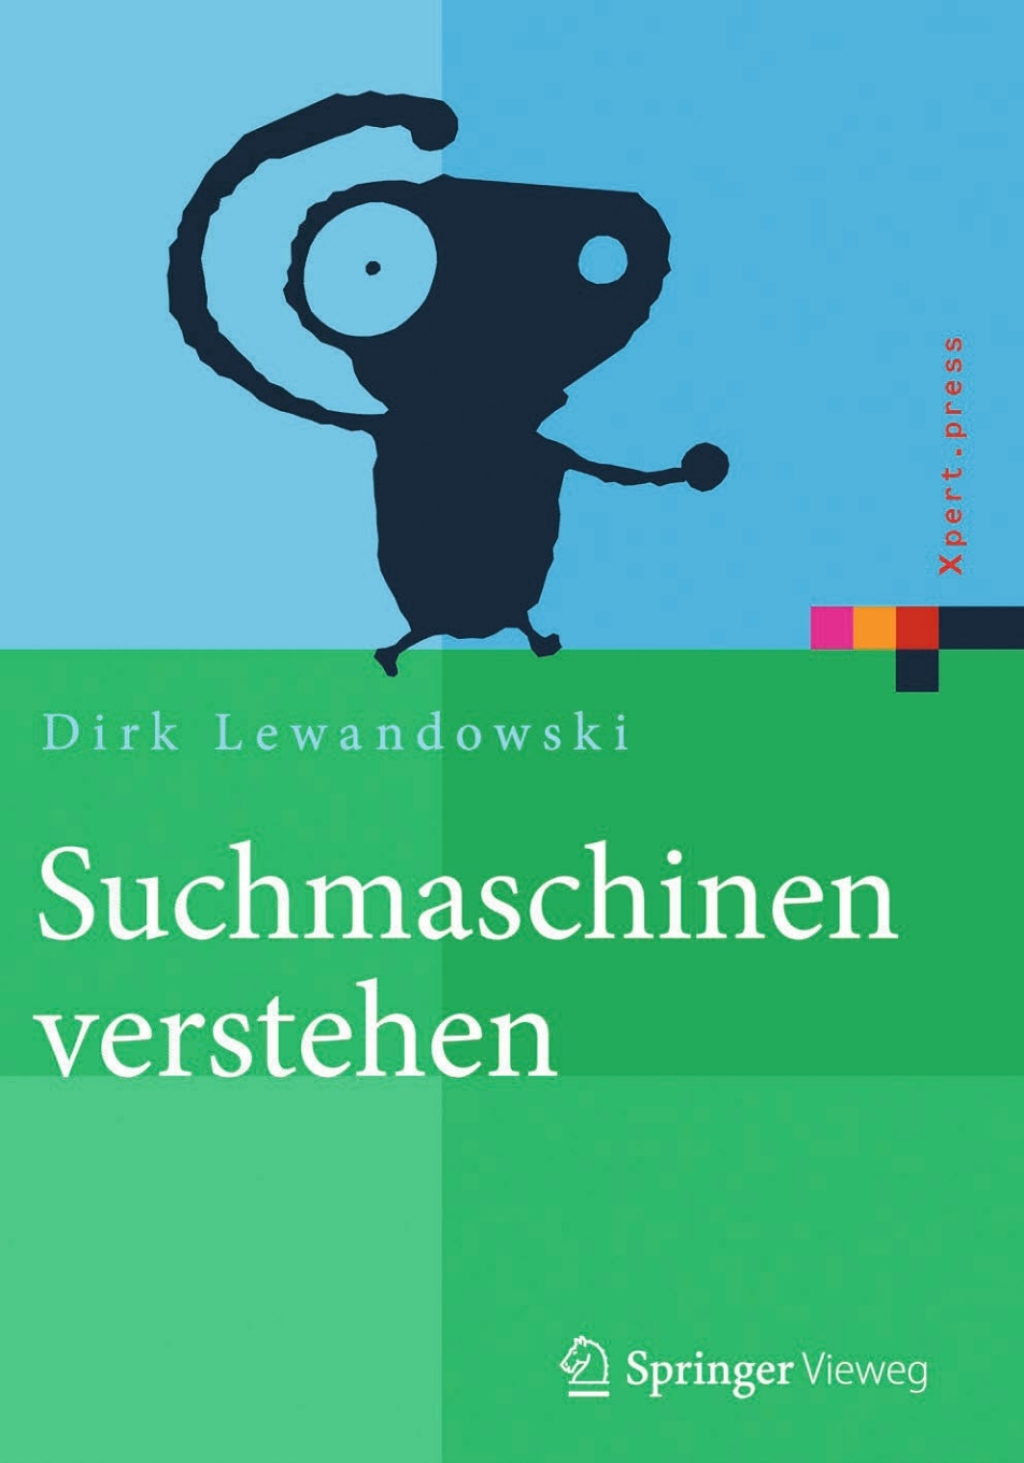 Suchmaschinen verstehen (eBook Rental) - Dirk Lewandowski,